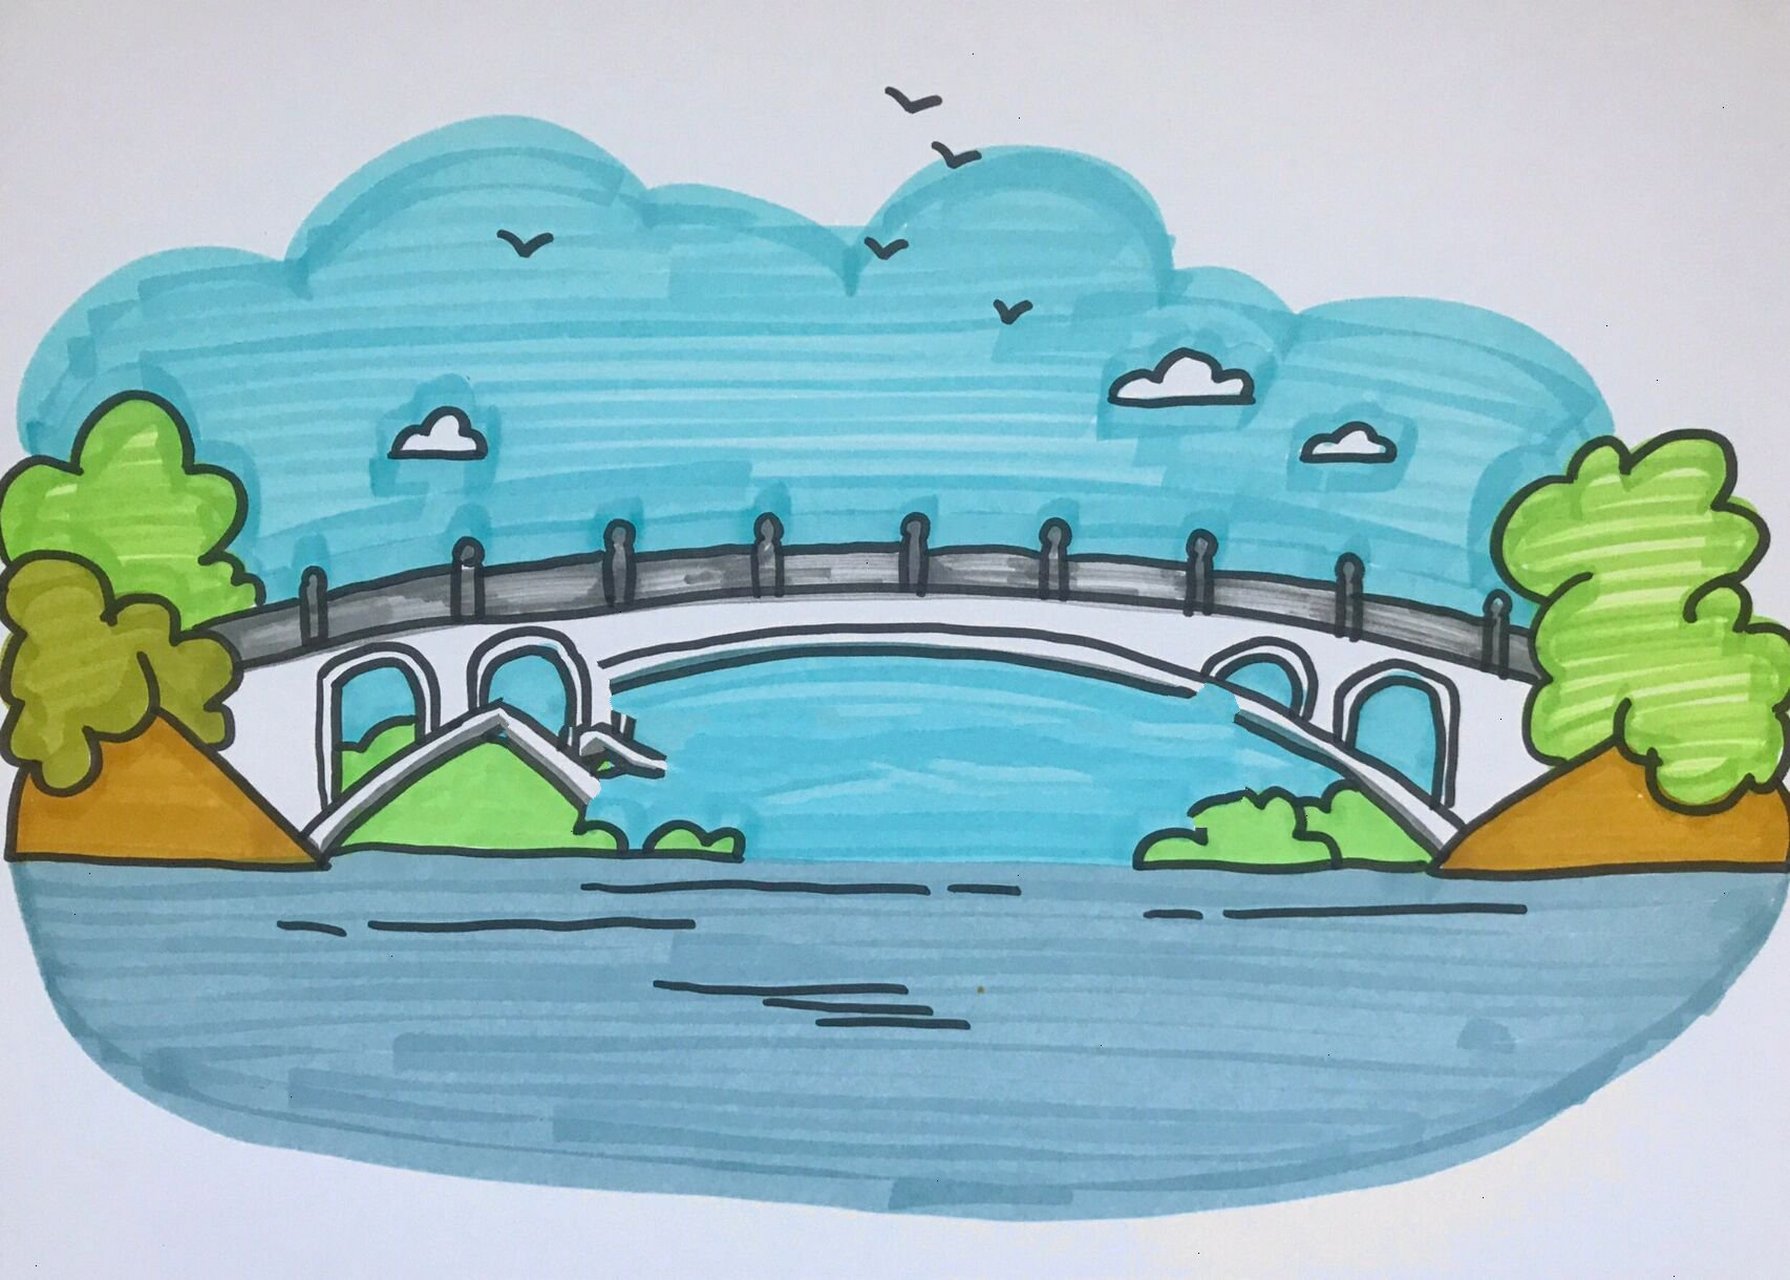 赵州桥简笔画侧面图片